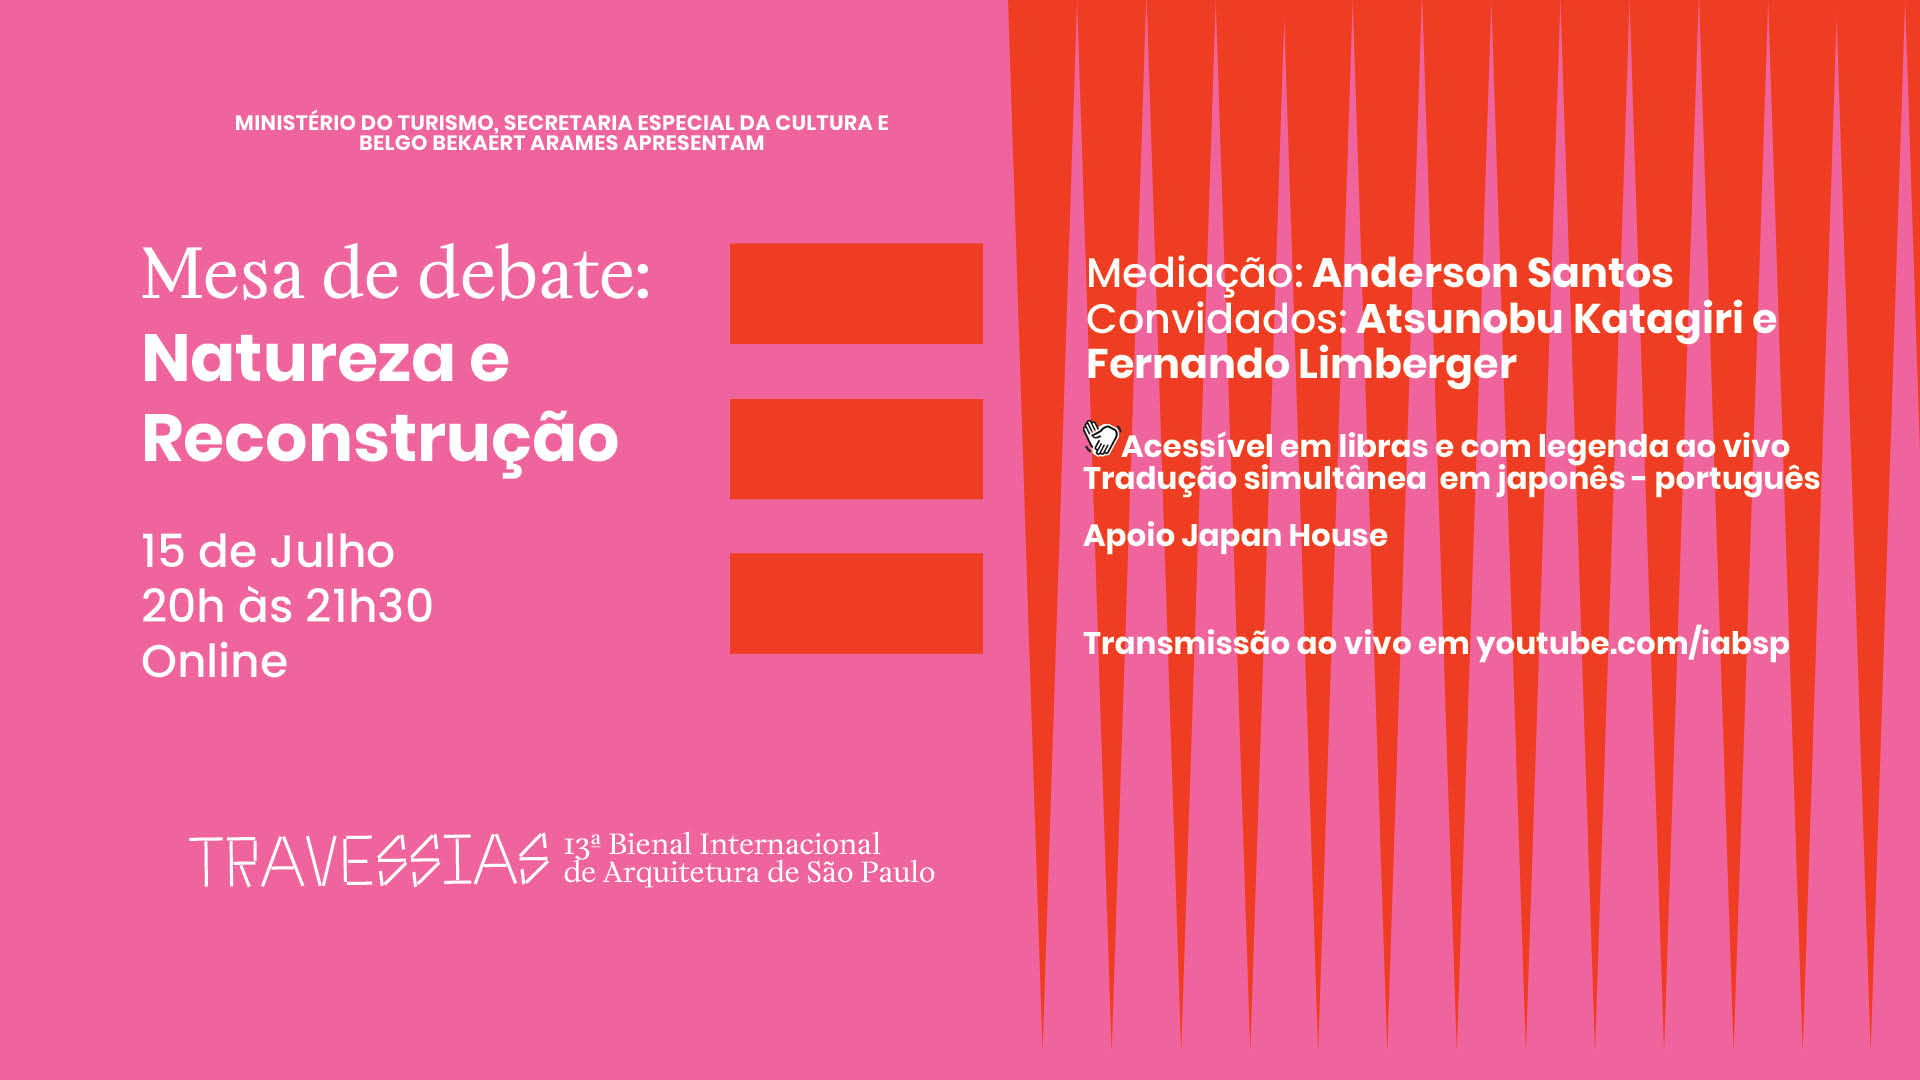 Banner informativo. Mesa de Debate: Natureza e Reconstrução. 15 de julho, das 20h às 21h30, online. Travessias - 13ª Bienal Internacional de Arquitetura de São Paulo